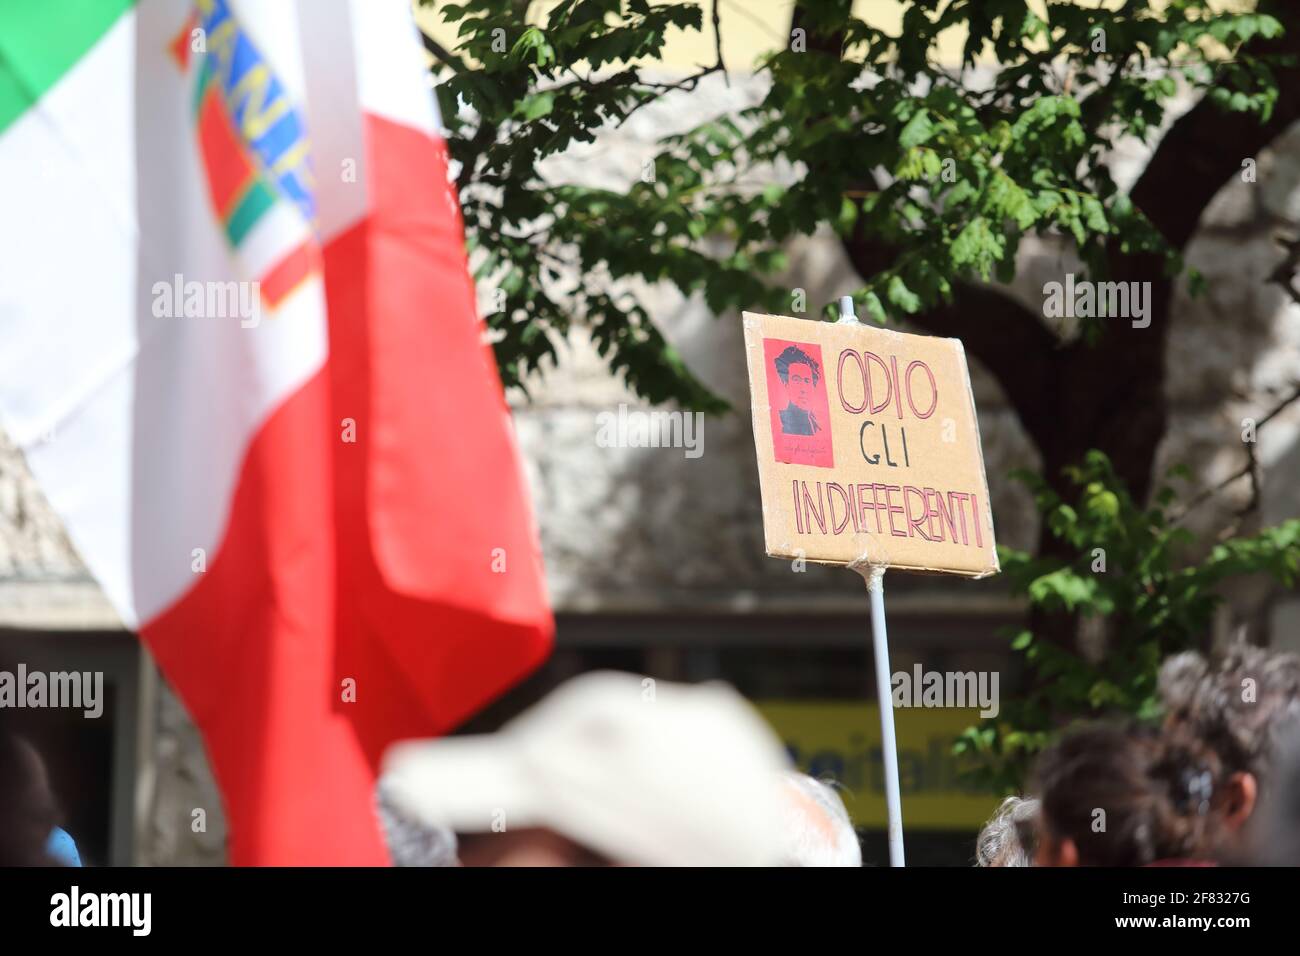 Roma, Italia - 25 aprile 2018: Il corteo dell'Anpi sfila per le strade della capitale in occasione dell'anniversario della Liberazione d'Italia Stock Photo